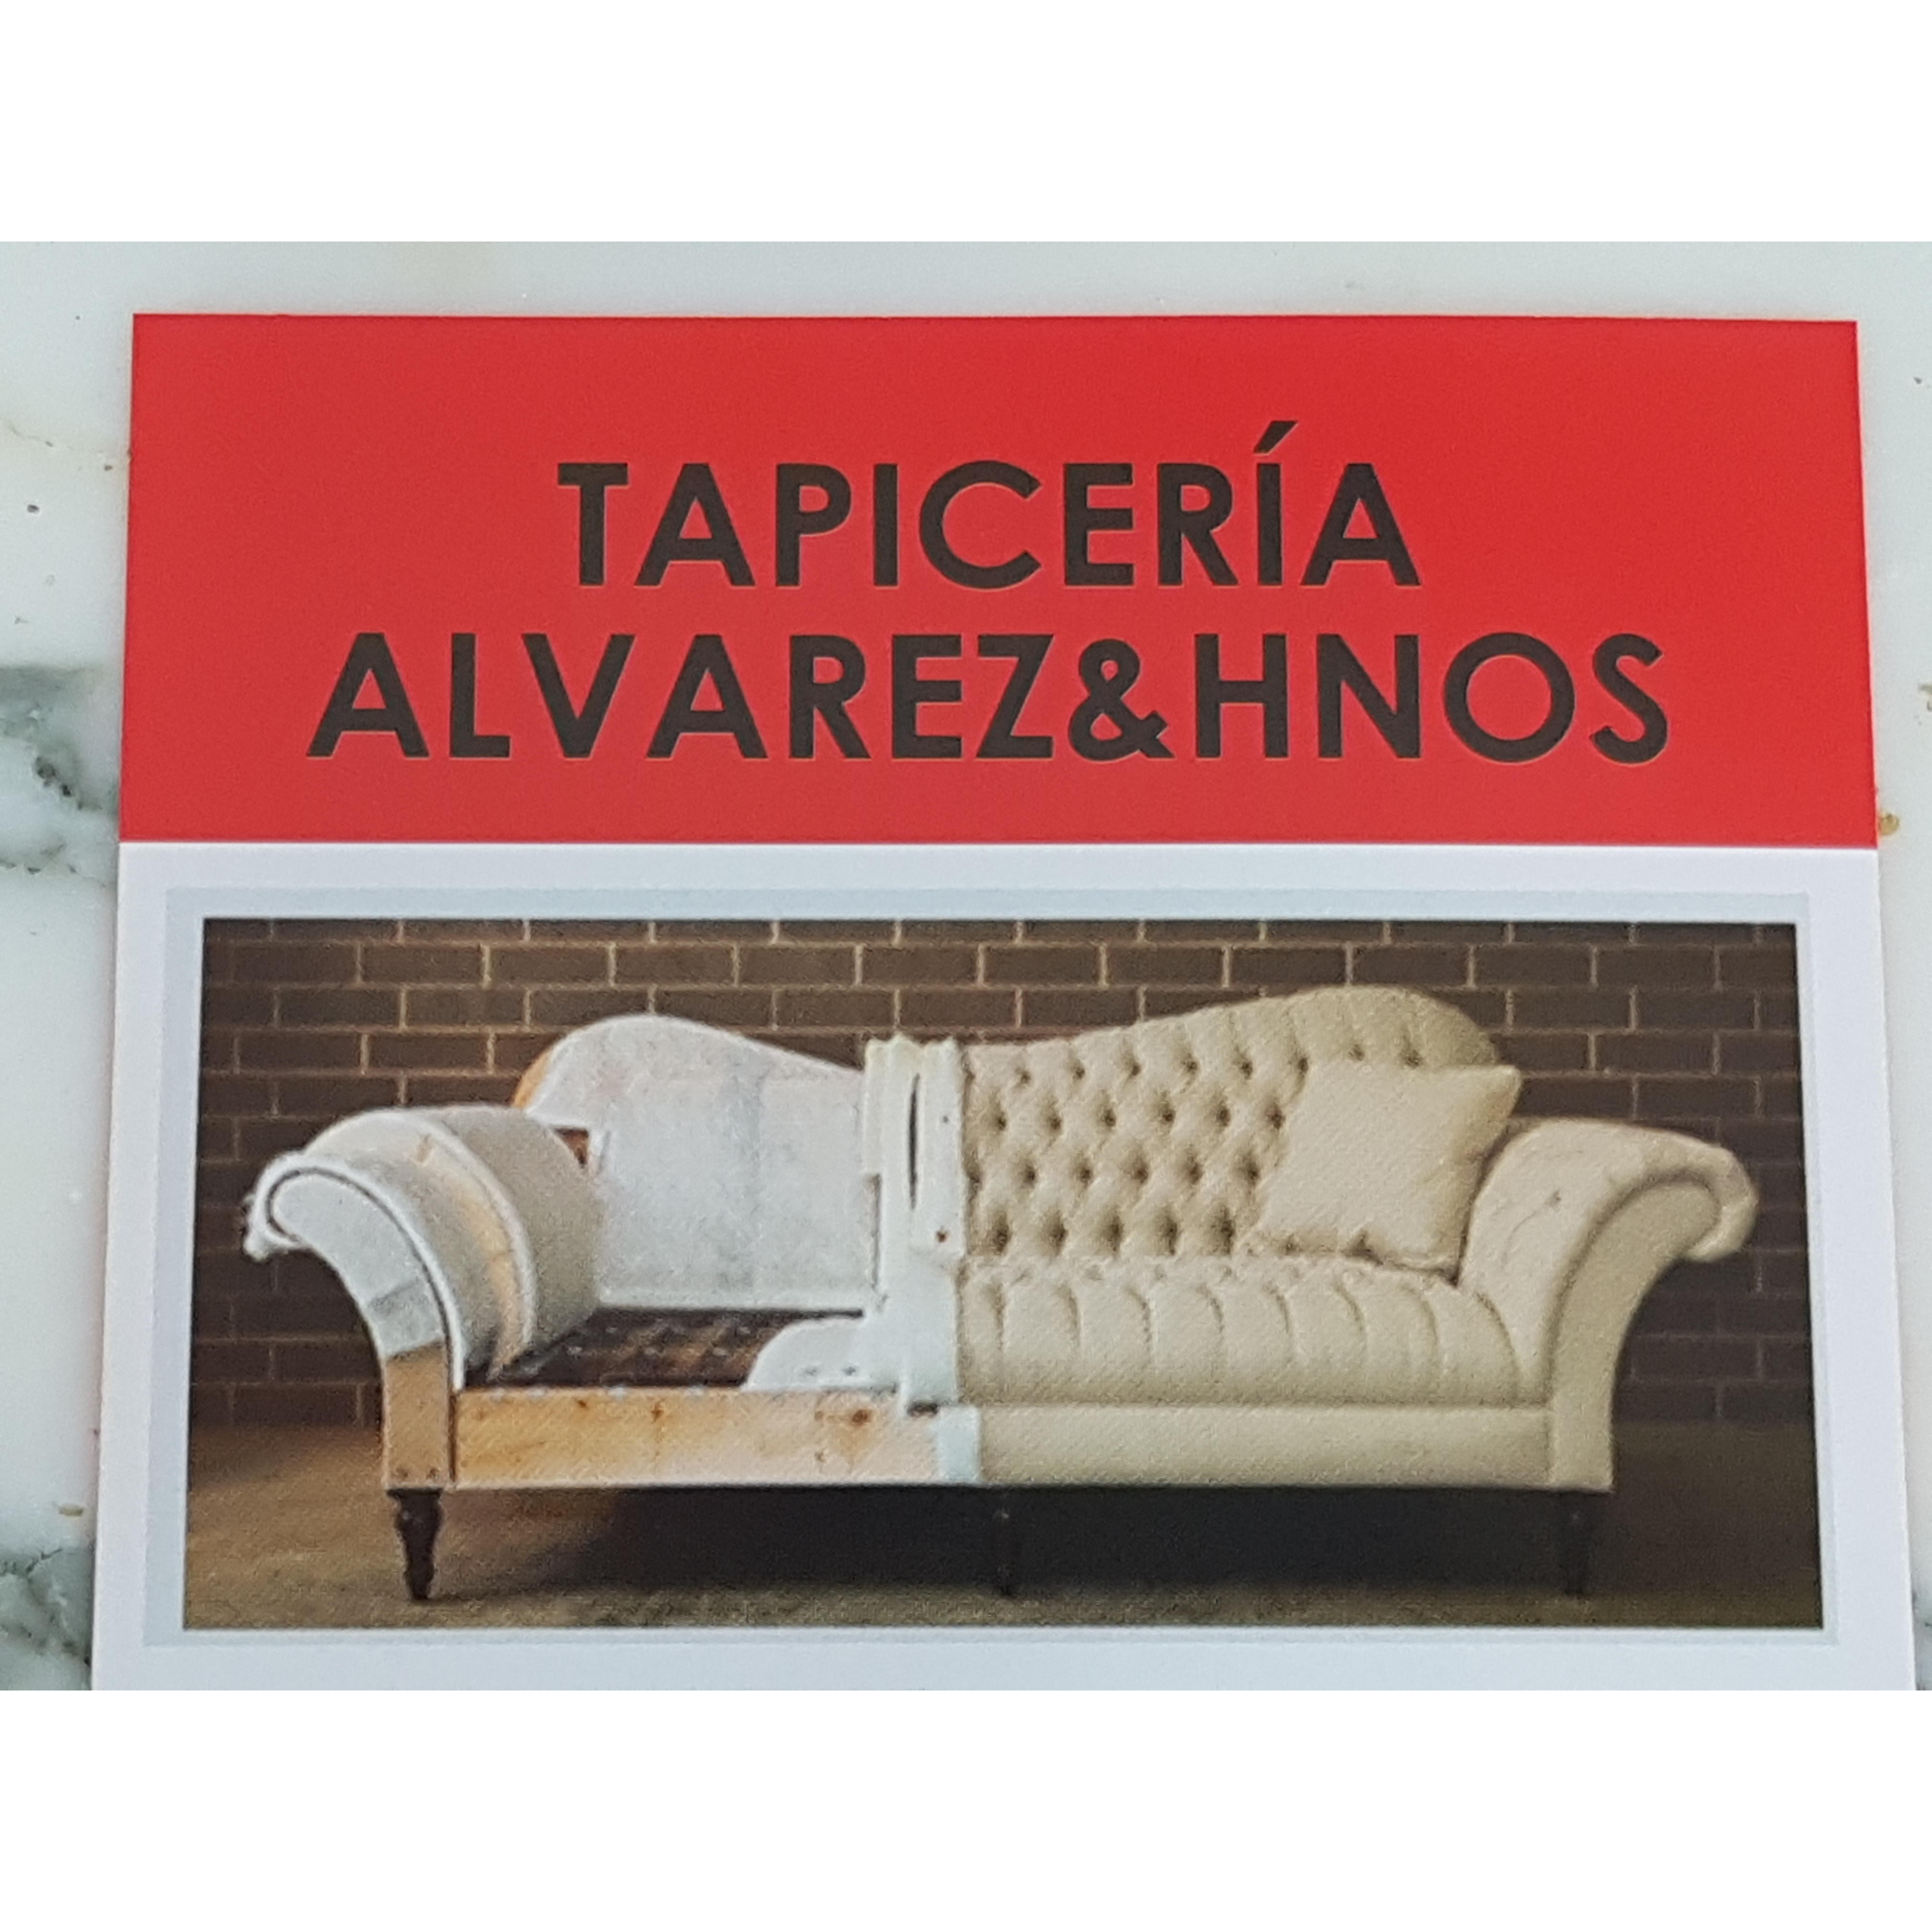 Tapiceria Alvarez Hermanos - Upholstery Shop - Madrid - 912 53 68 83 Spain | ShowMeLocal.com